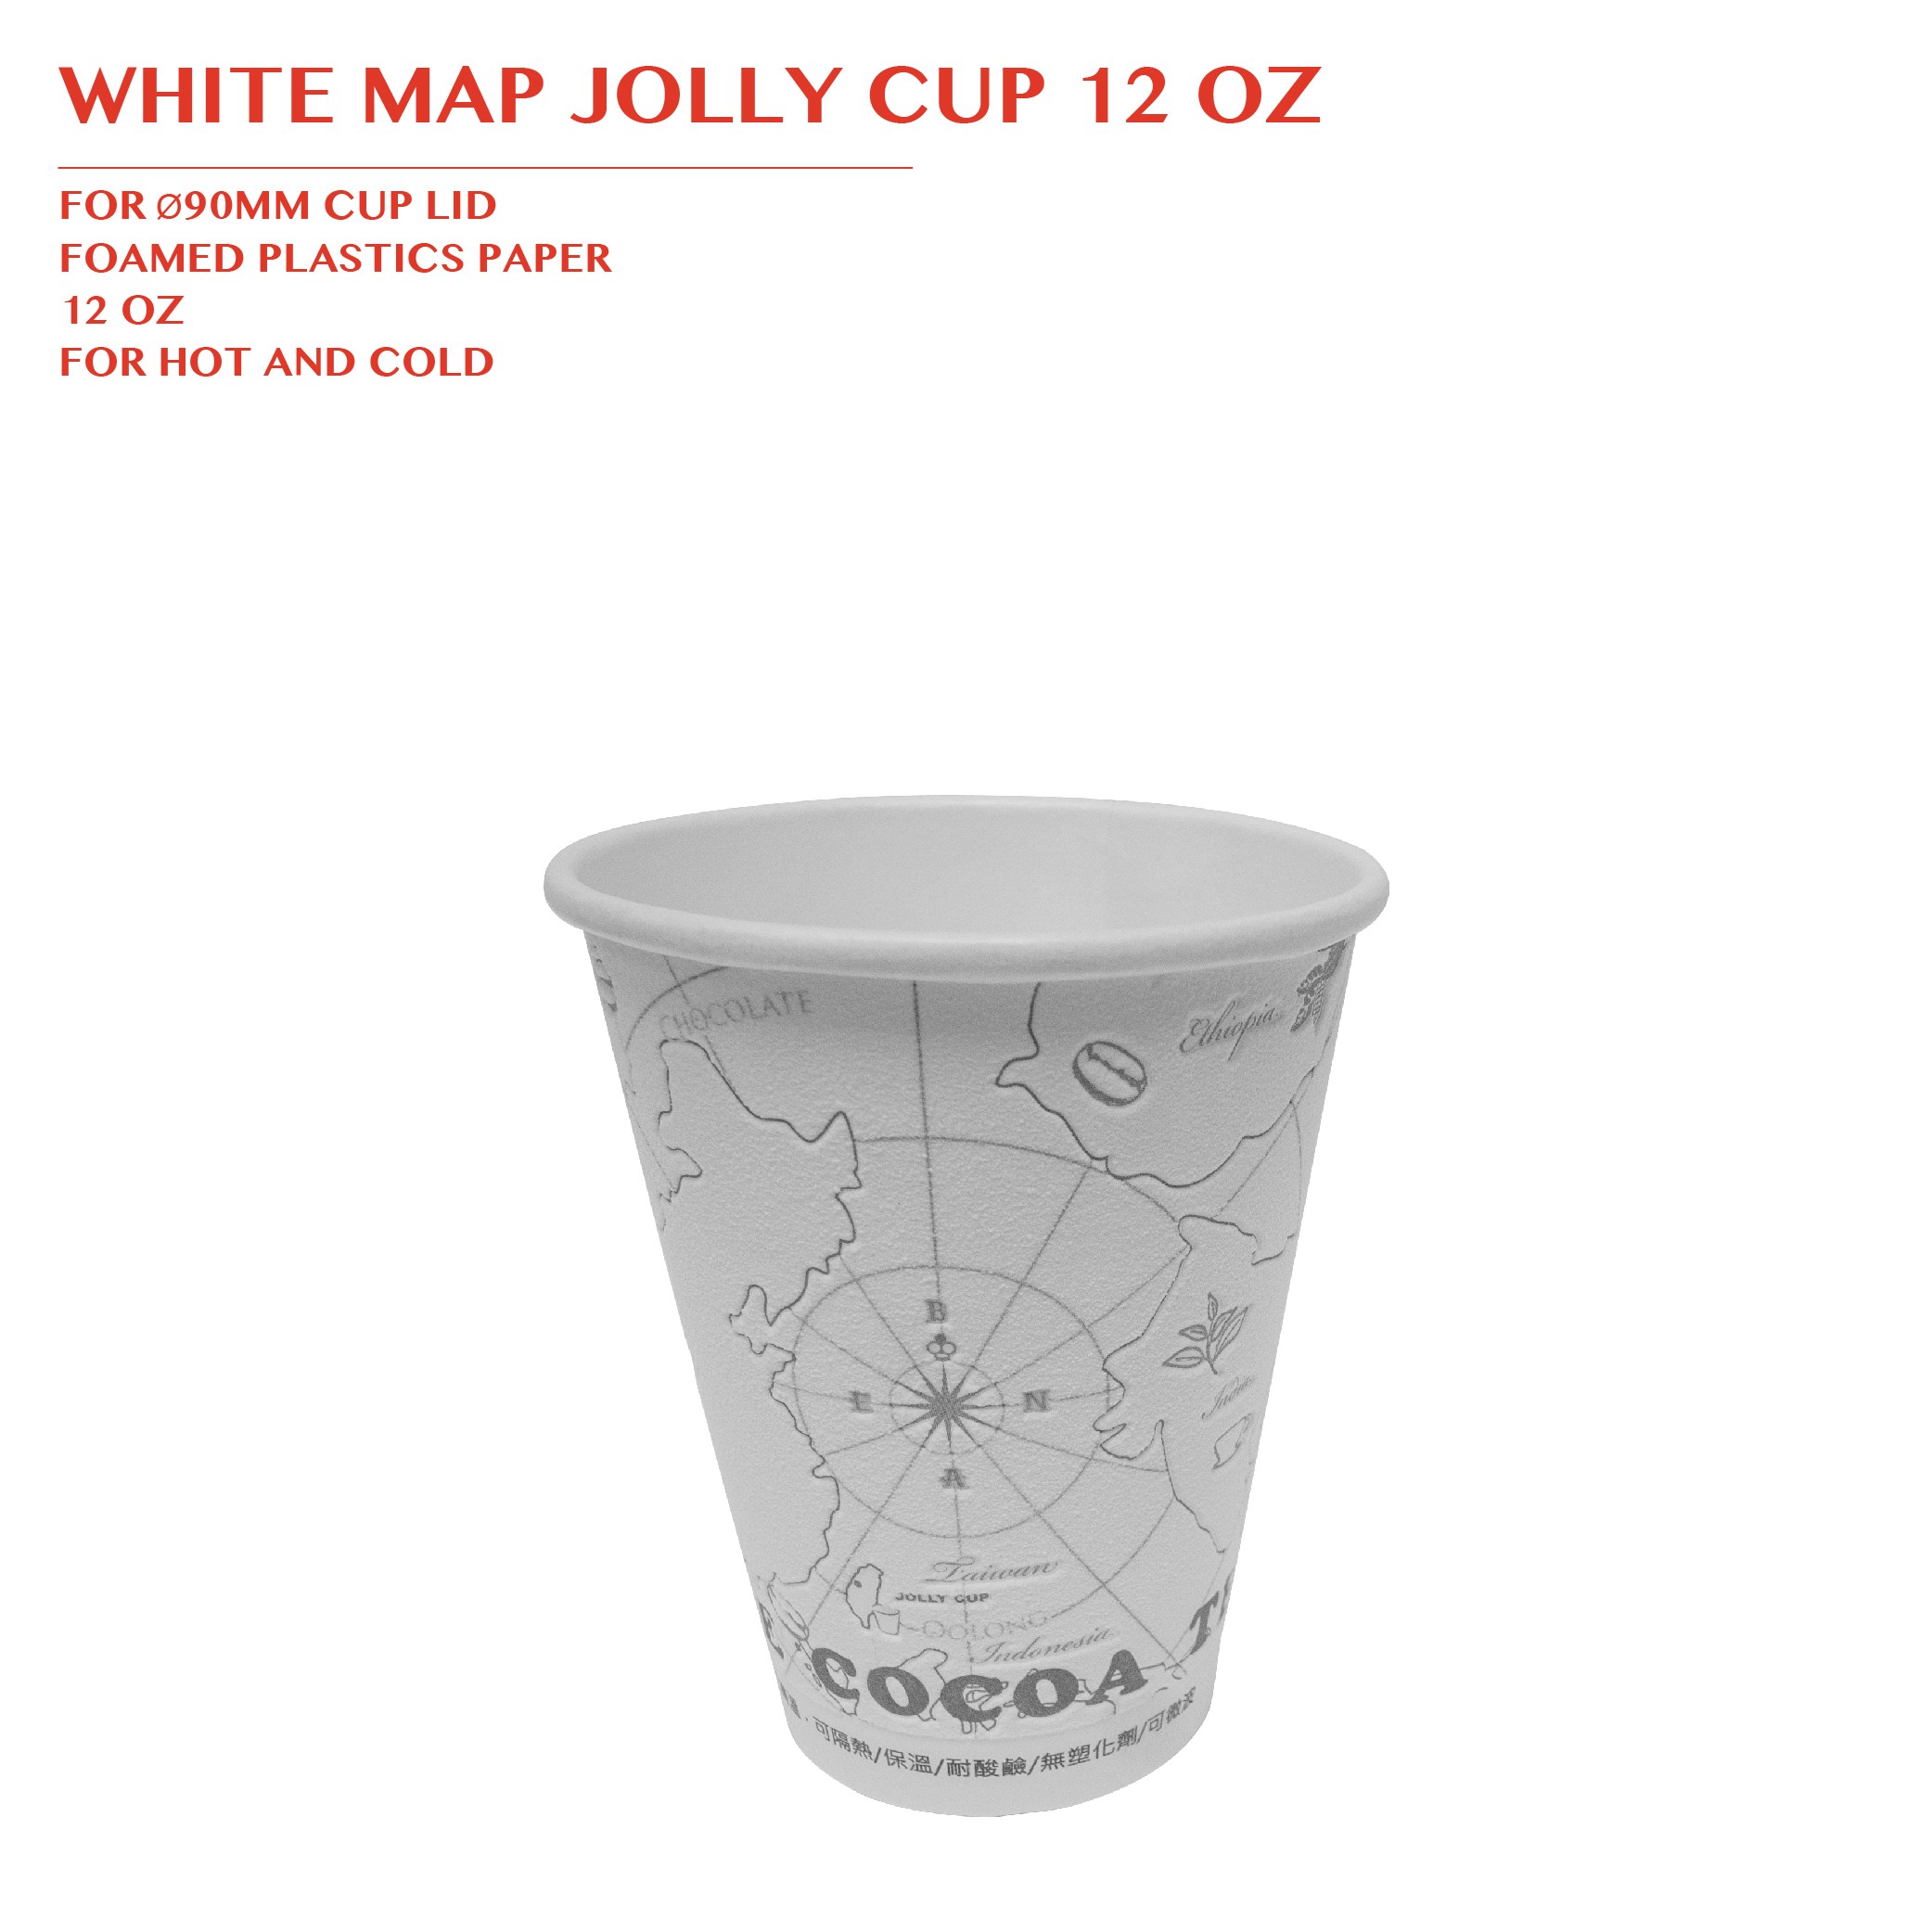 PRE-ORDER WHITE MAP JOLLY CUP 12 OZ PCS/CTN